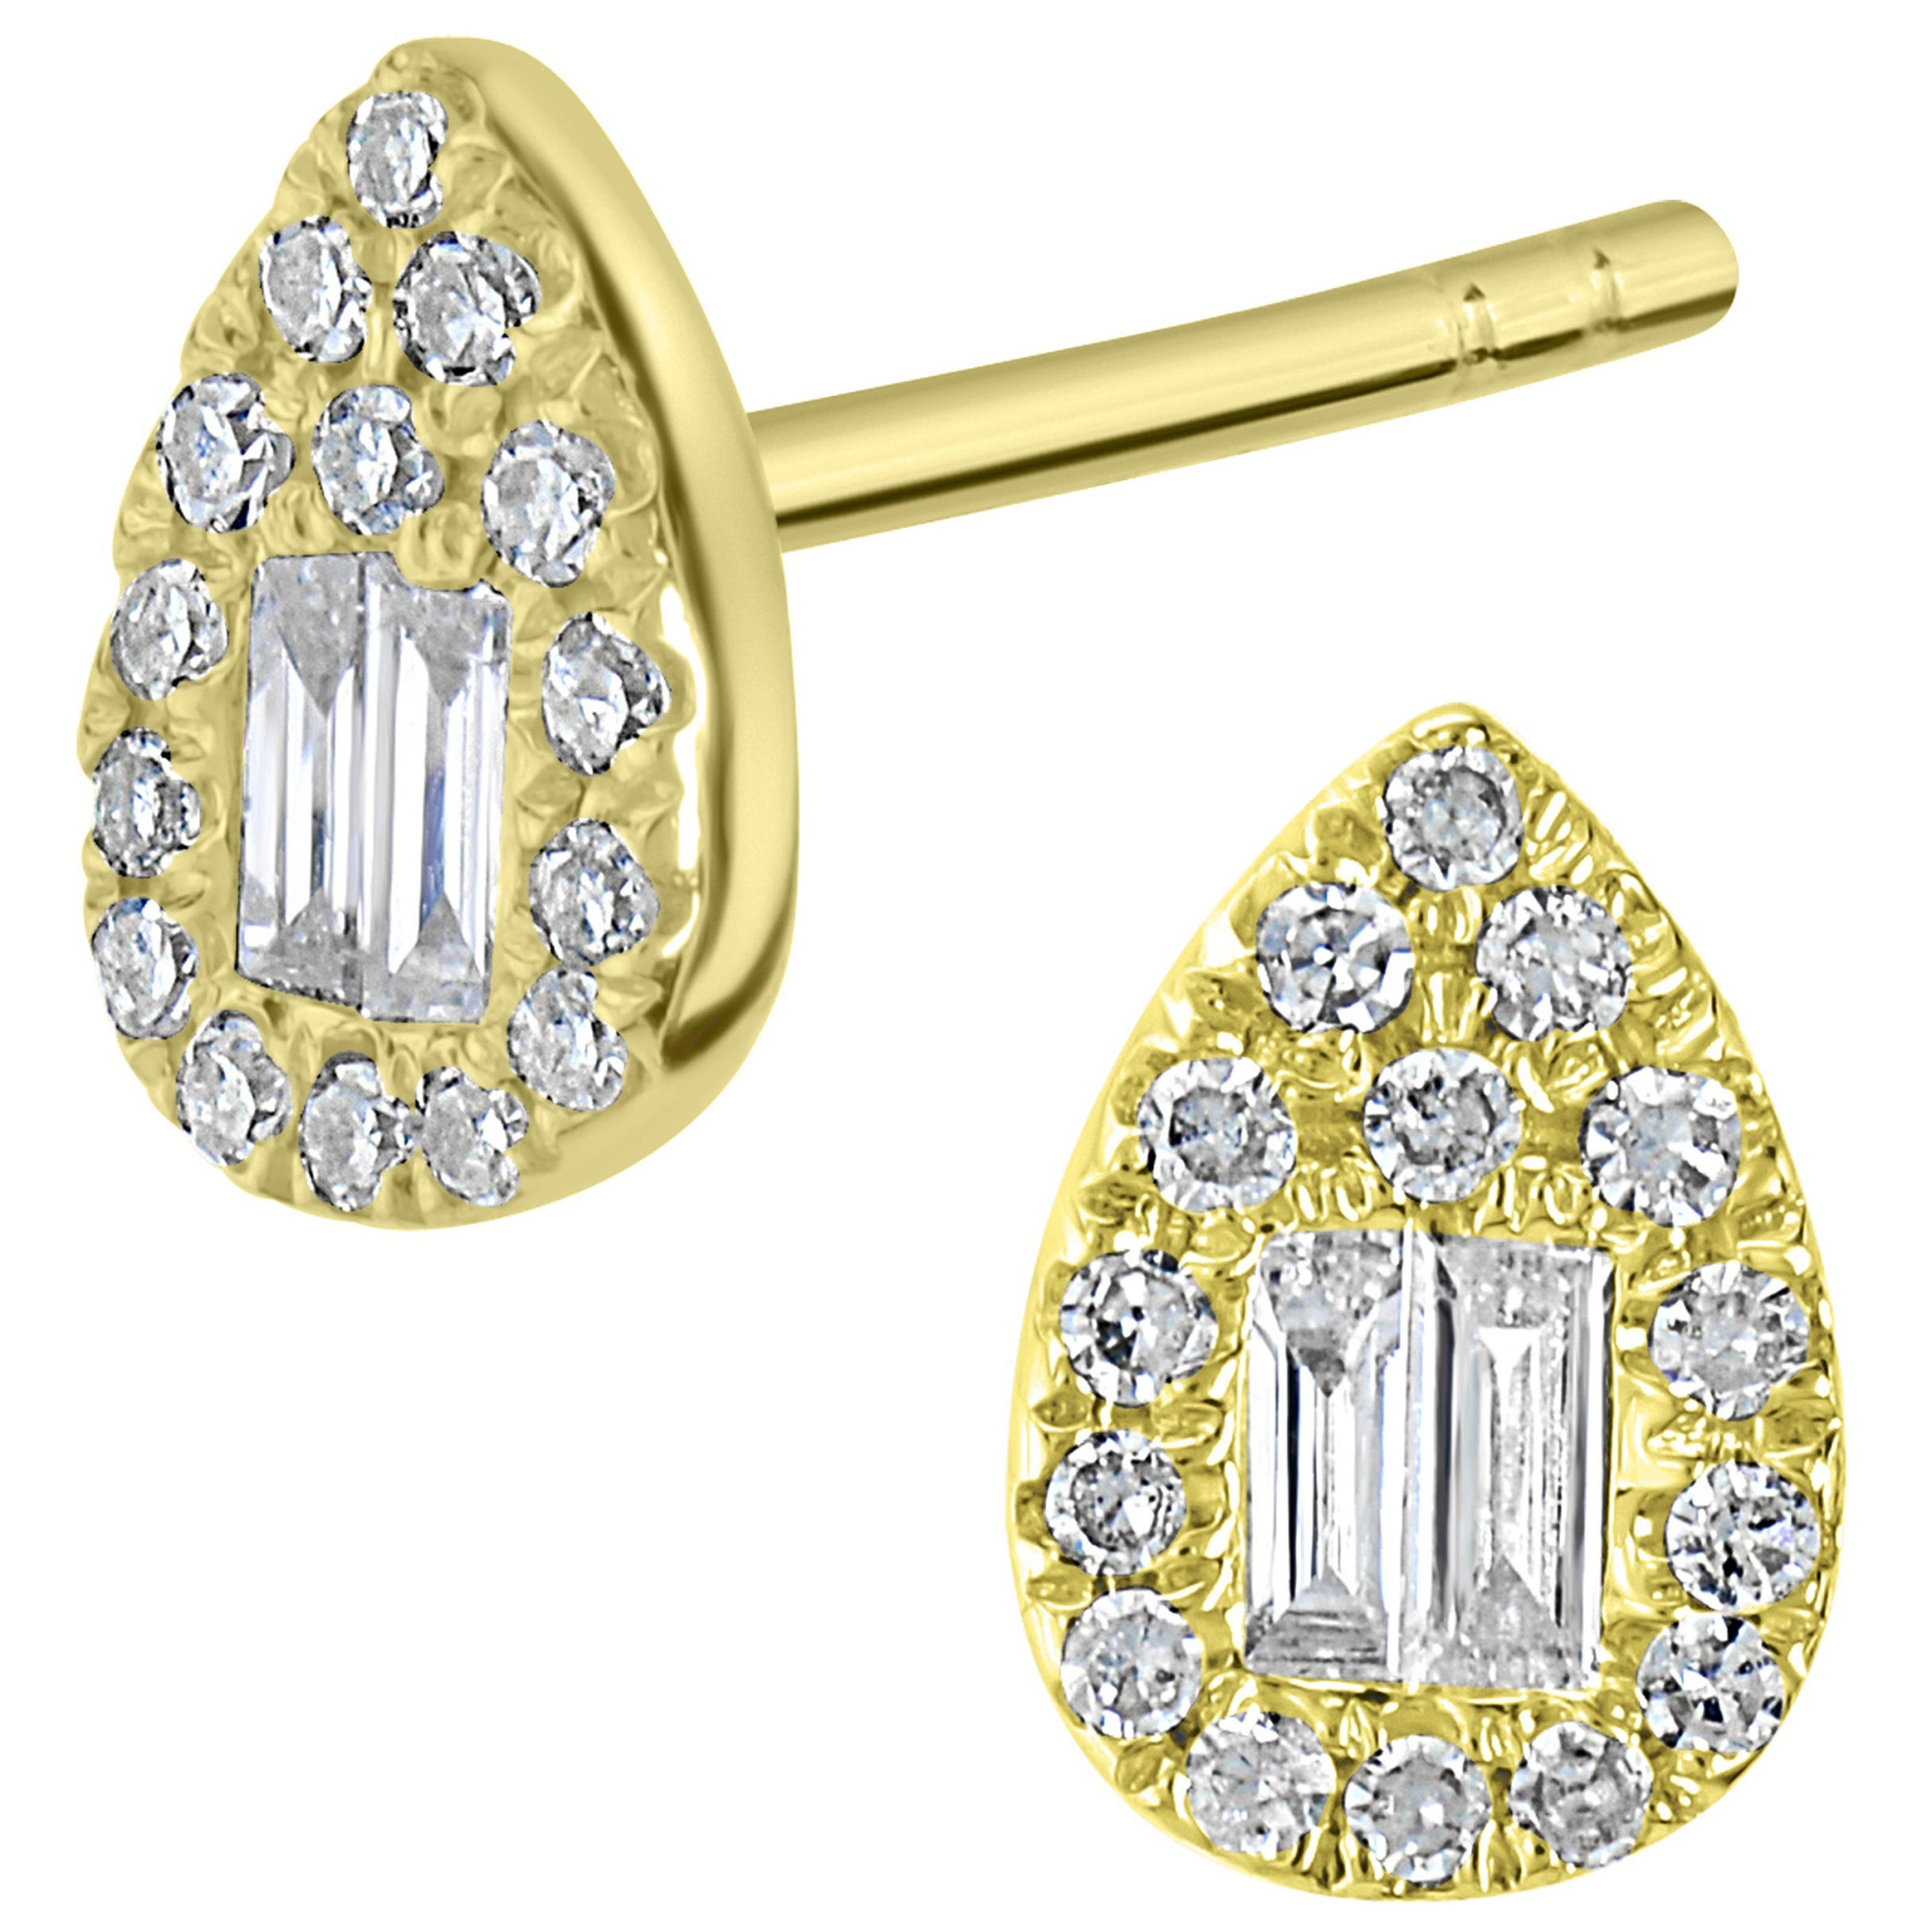 Luxle Diamond Stud Earrings in 18 Karat Yellow Gold For Sale